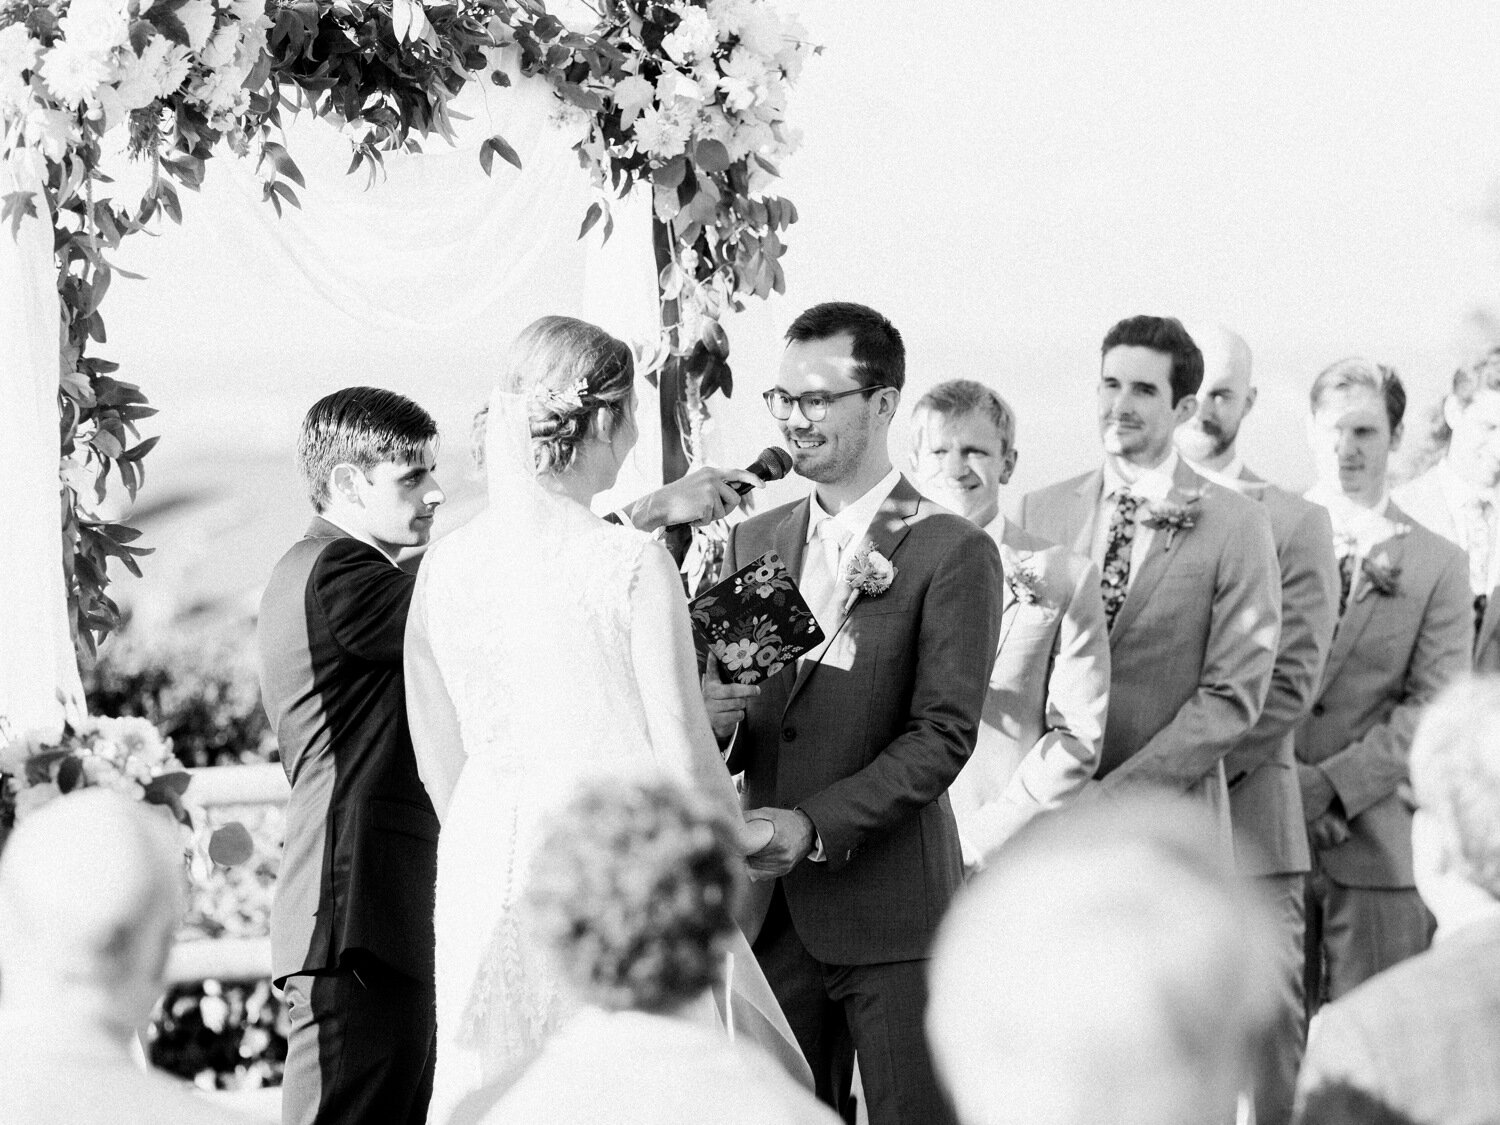 rosehill community center outdoor wedding ceremony 24.jpg